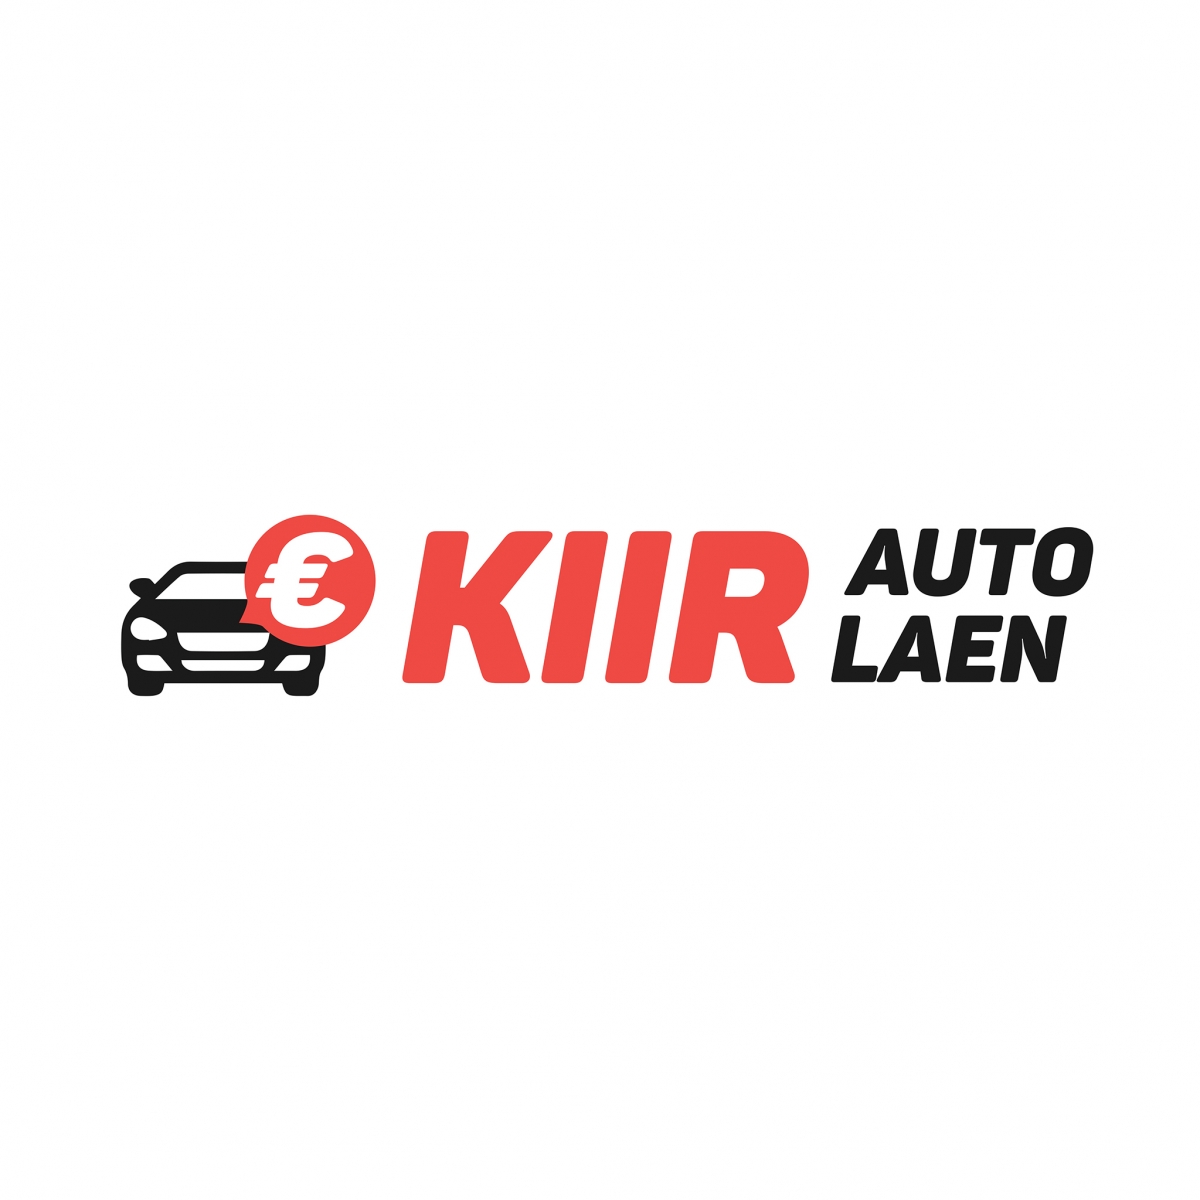 kiirautolaen-logo-5000x5000px